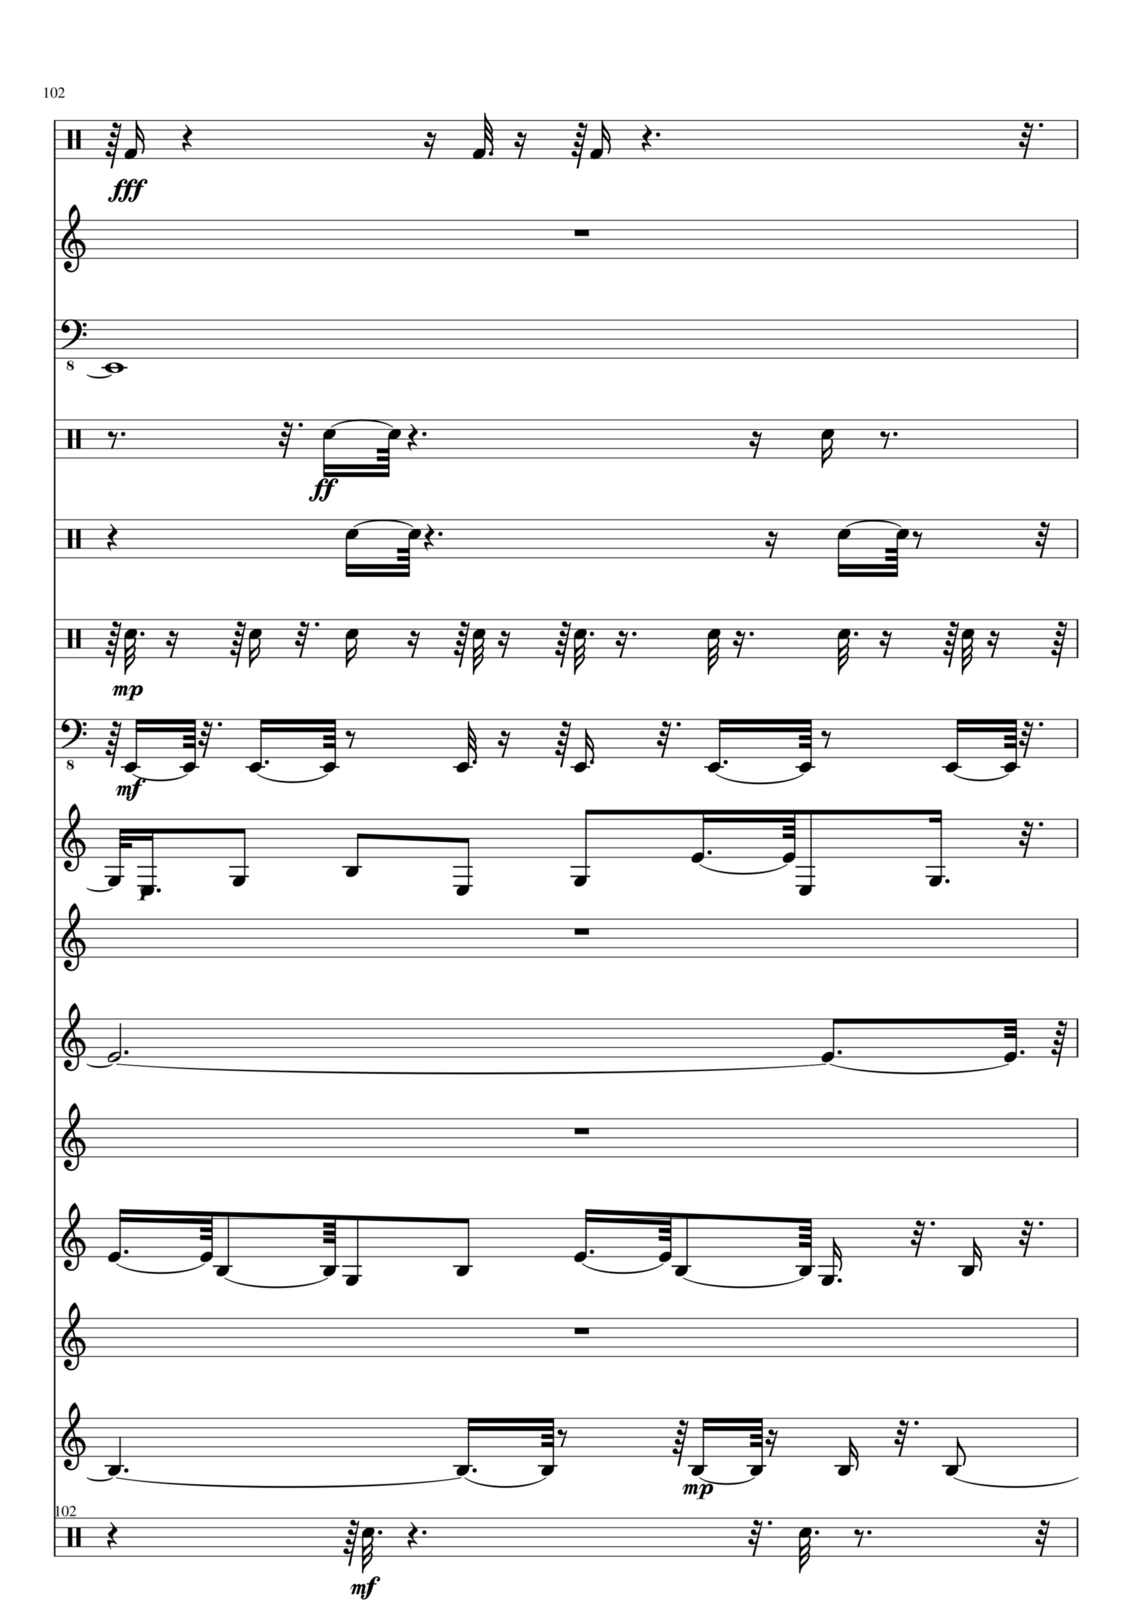 Utro polinyi slide, Image 102